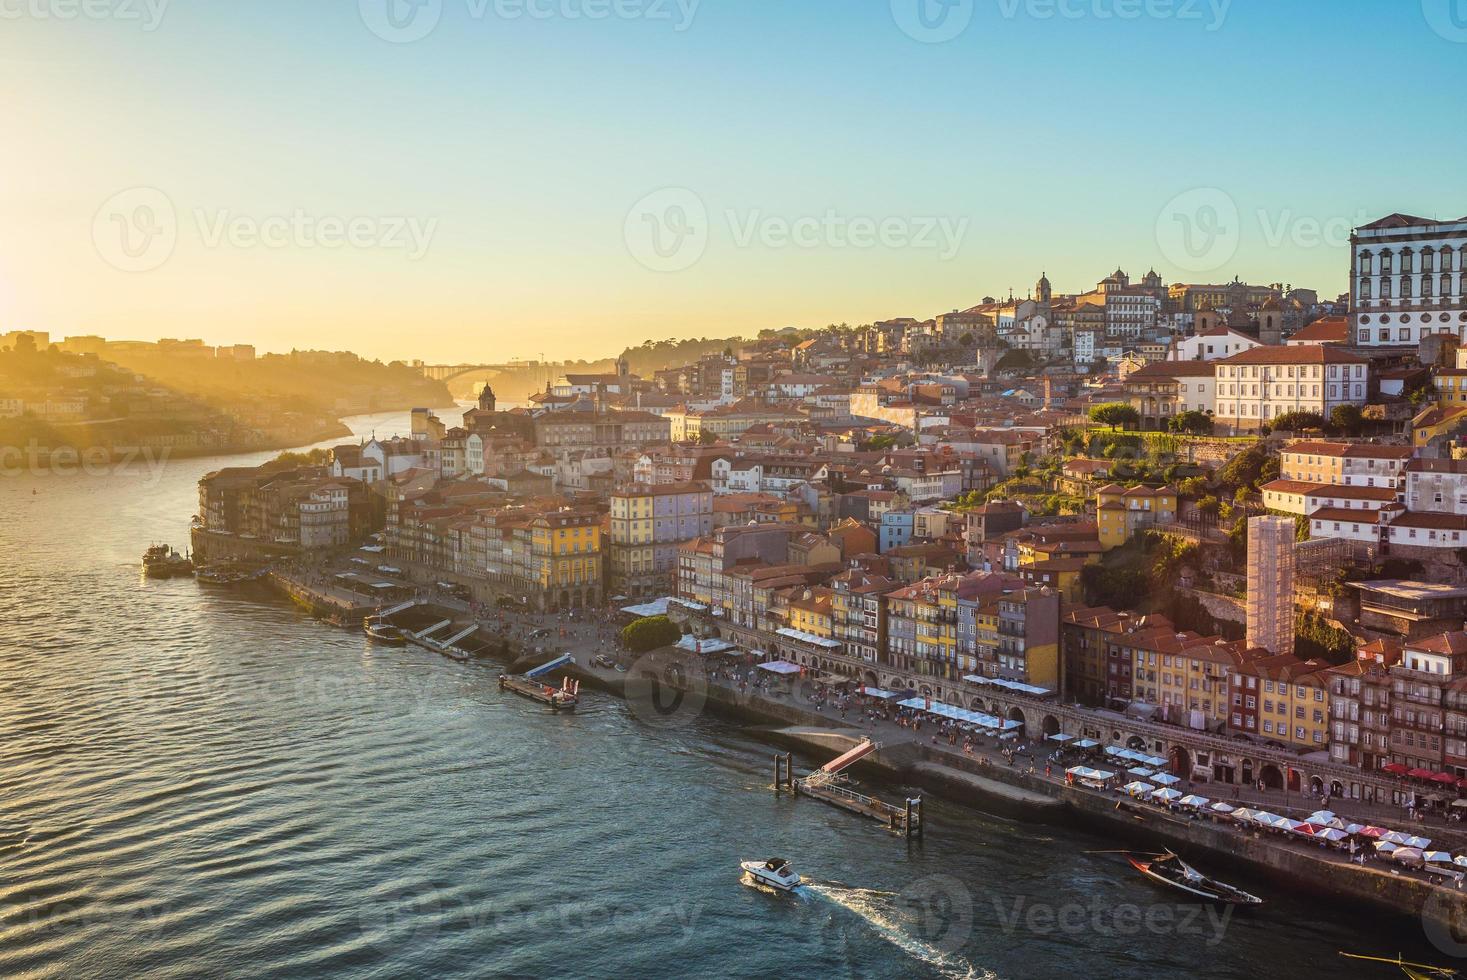 landschap van porto door de rivier de douro in portugal foto